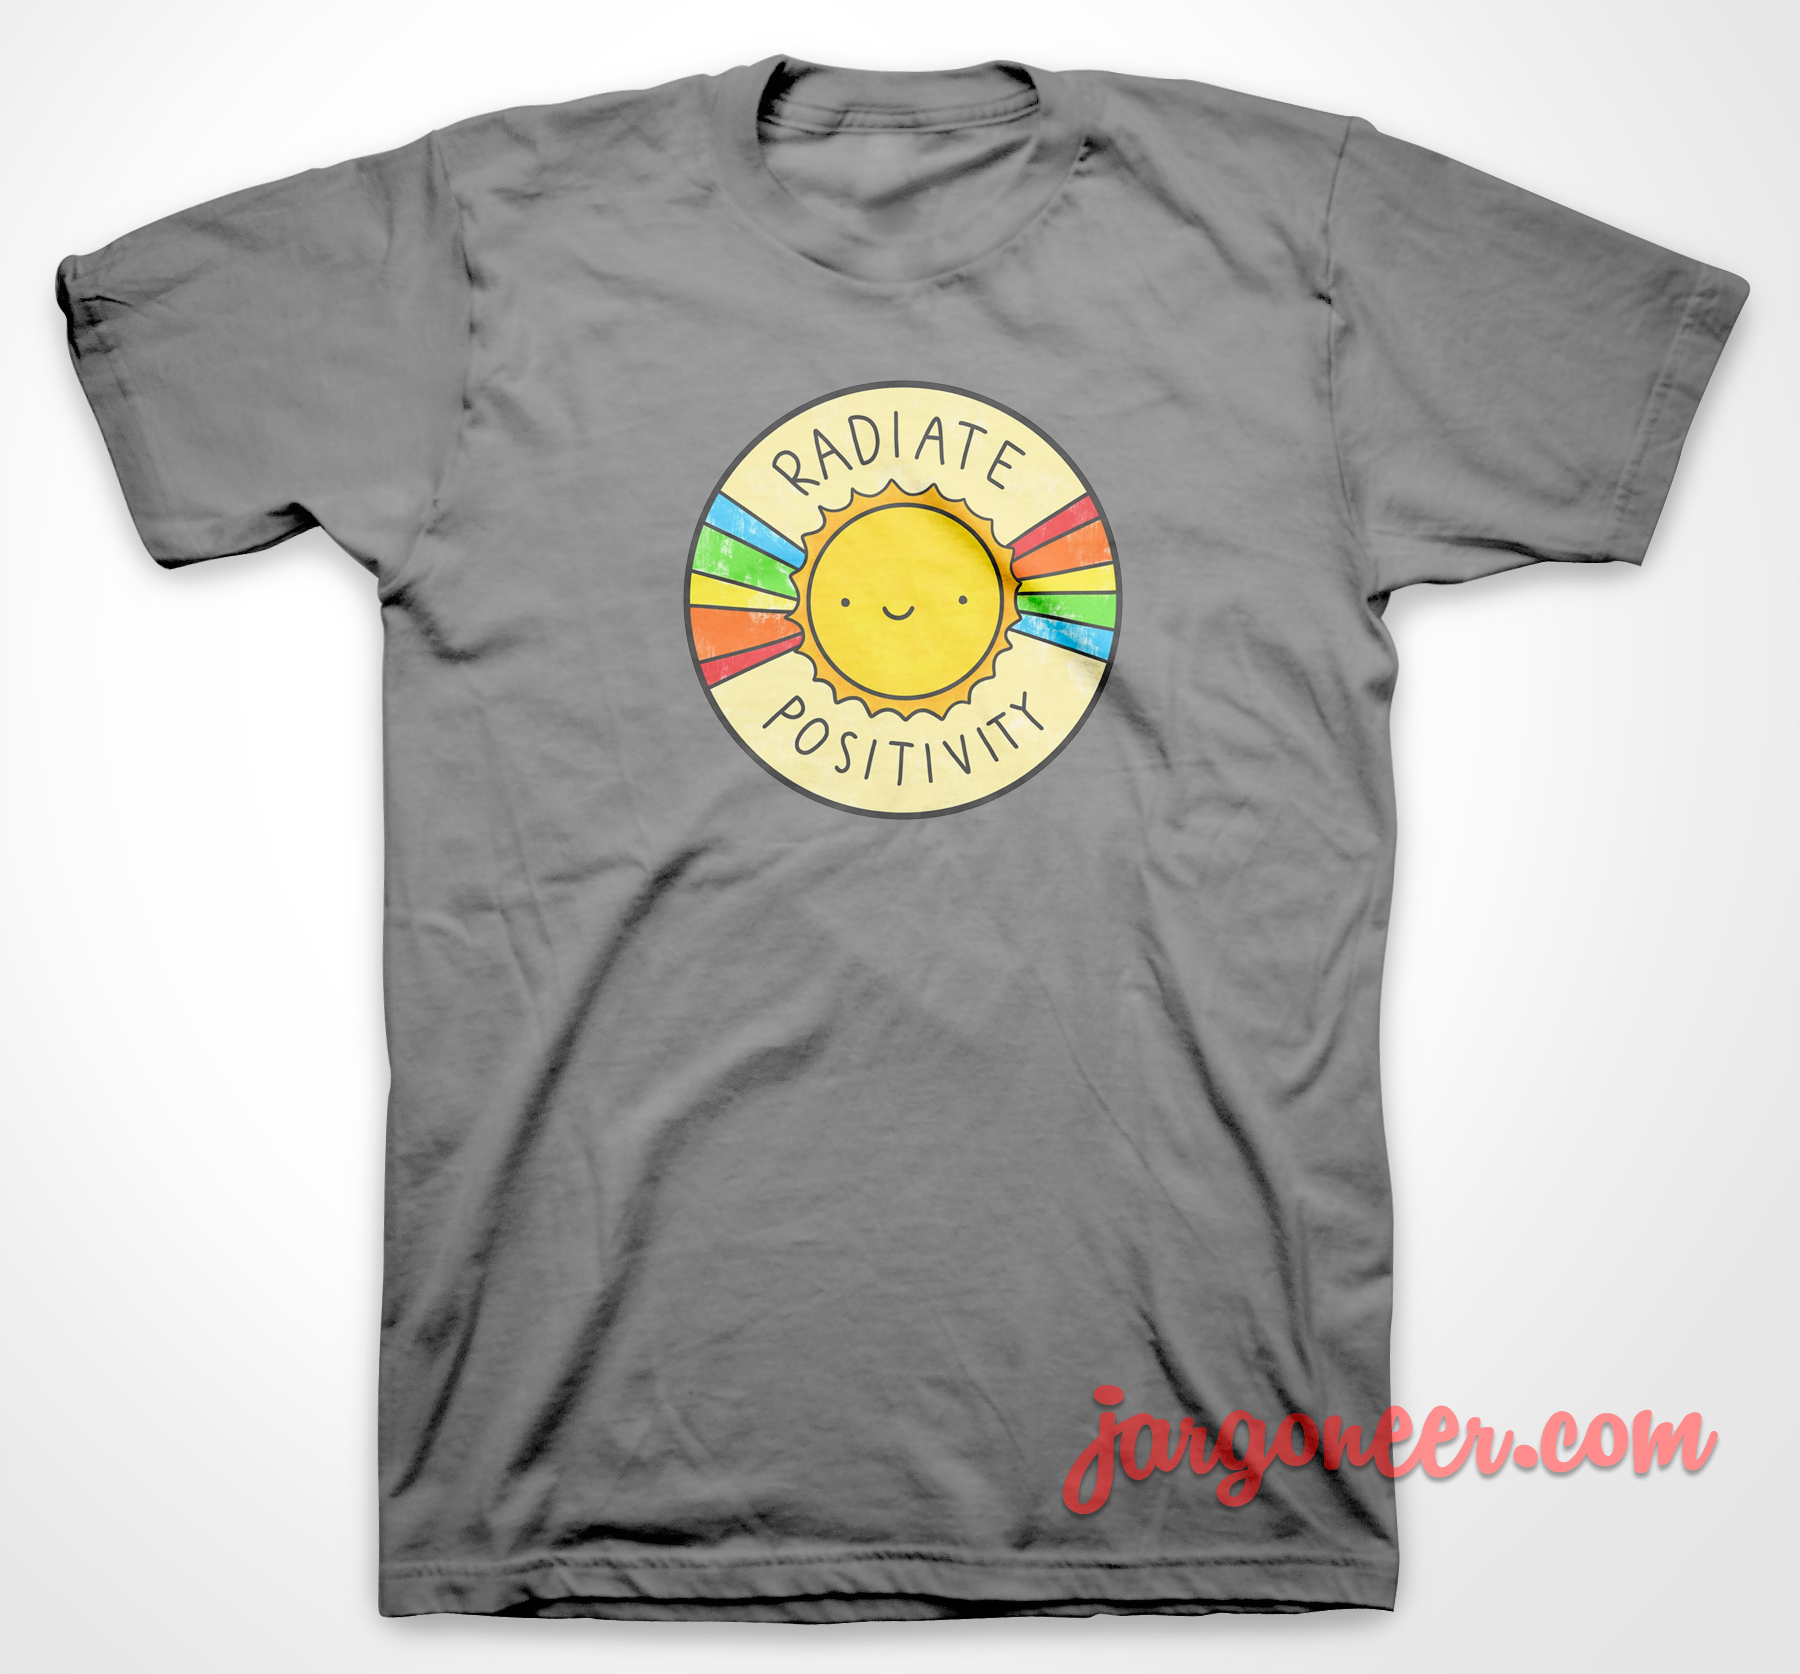 Sun Radiate Positivity - Shop Unique Graphic Cool Shirt Designs